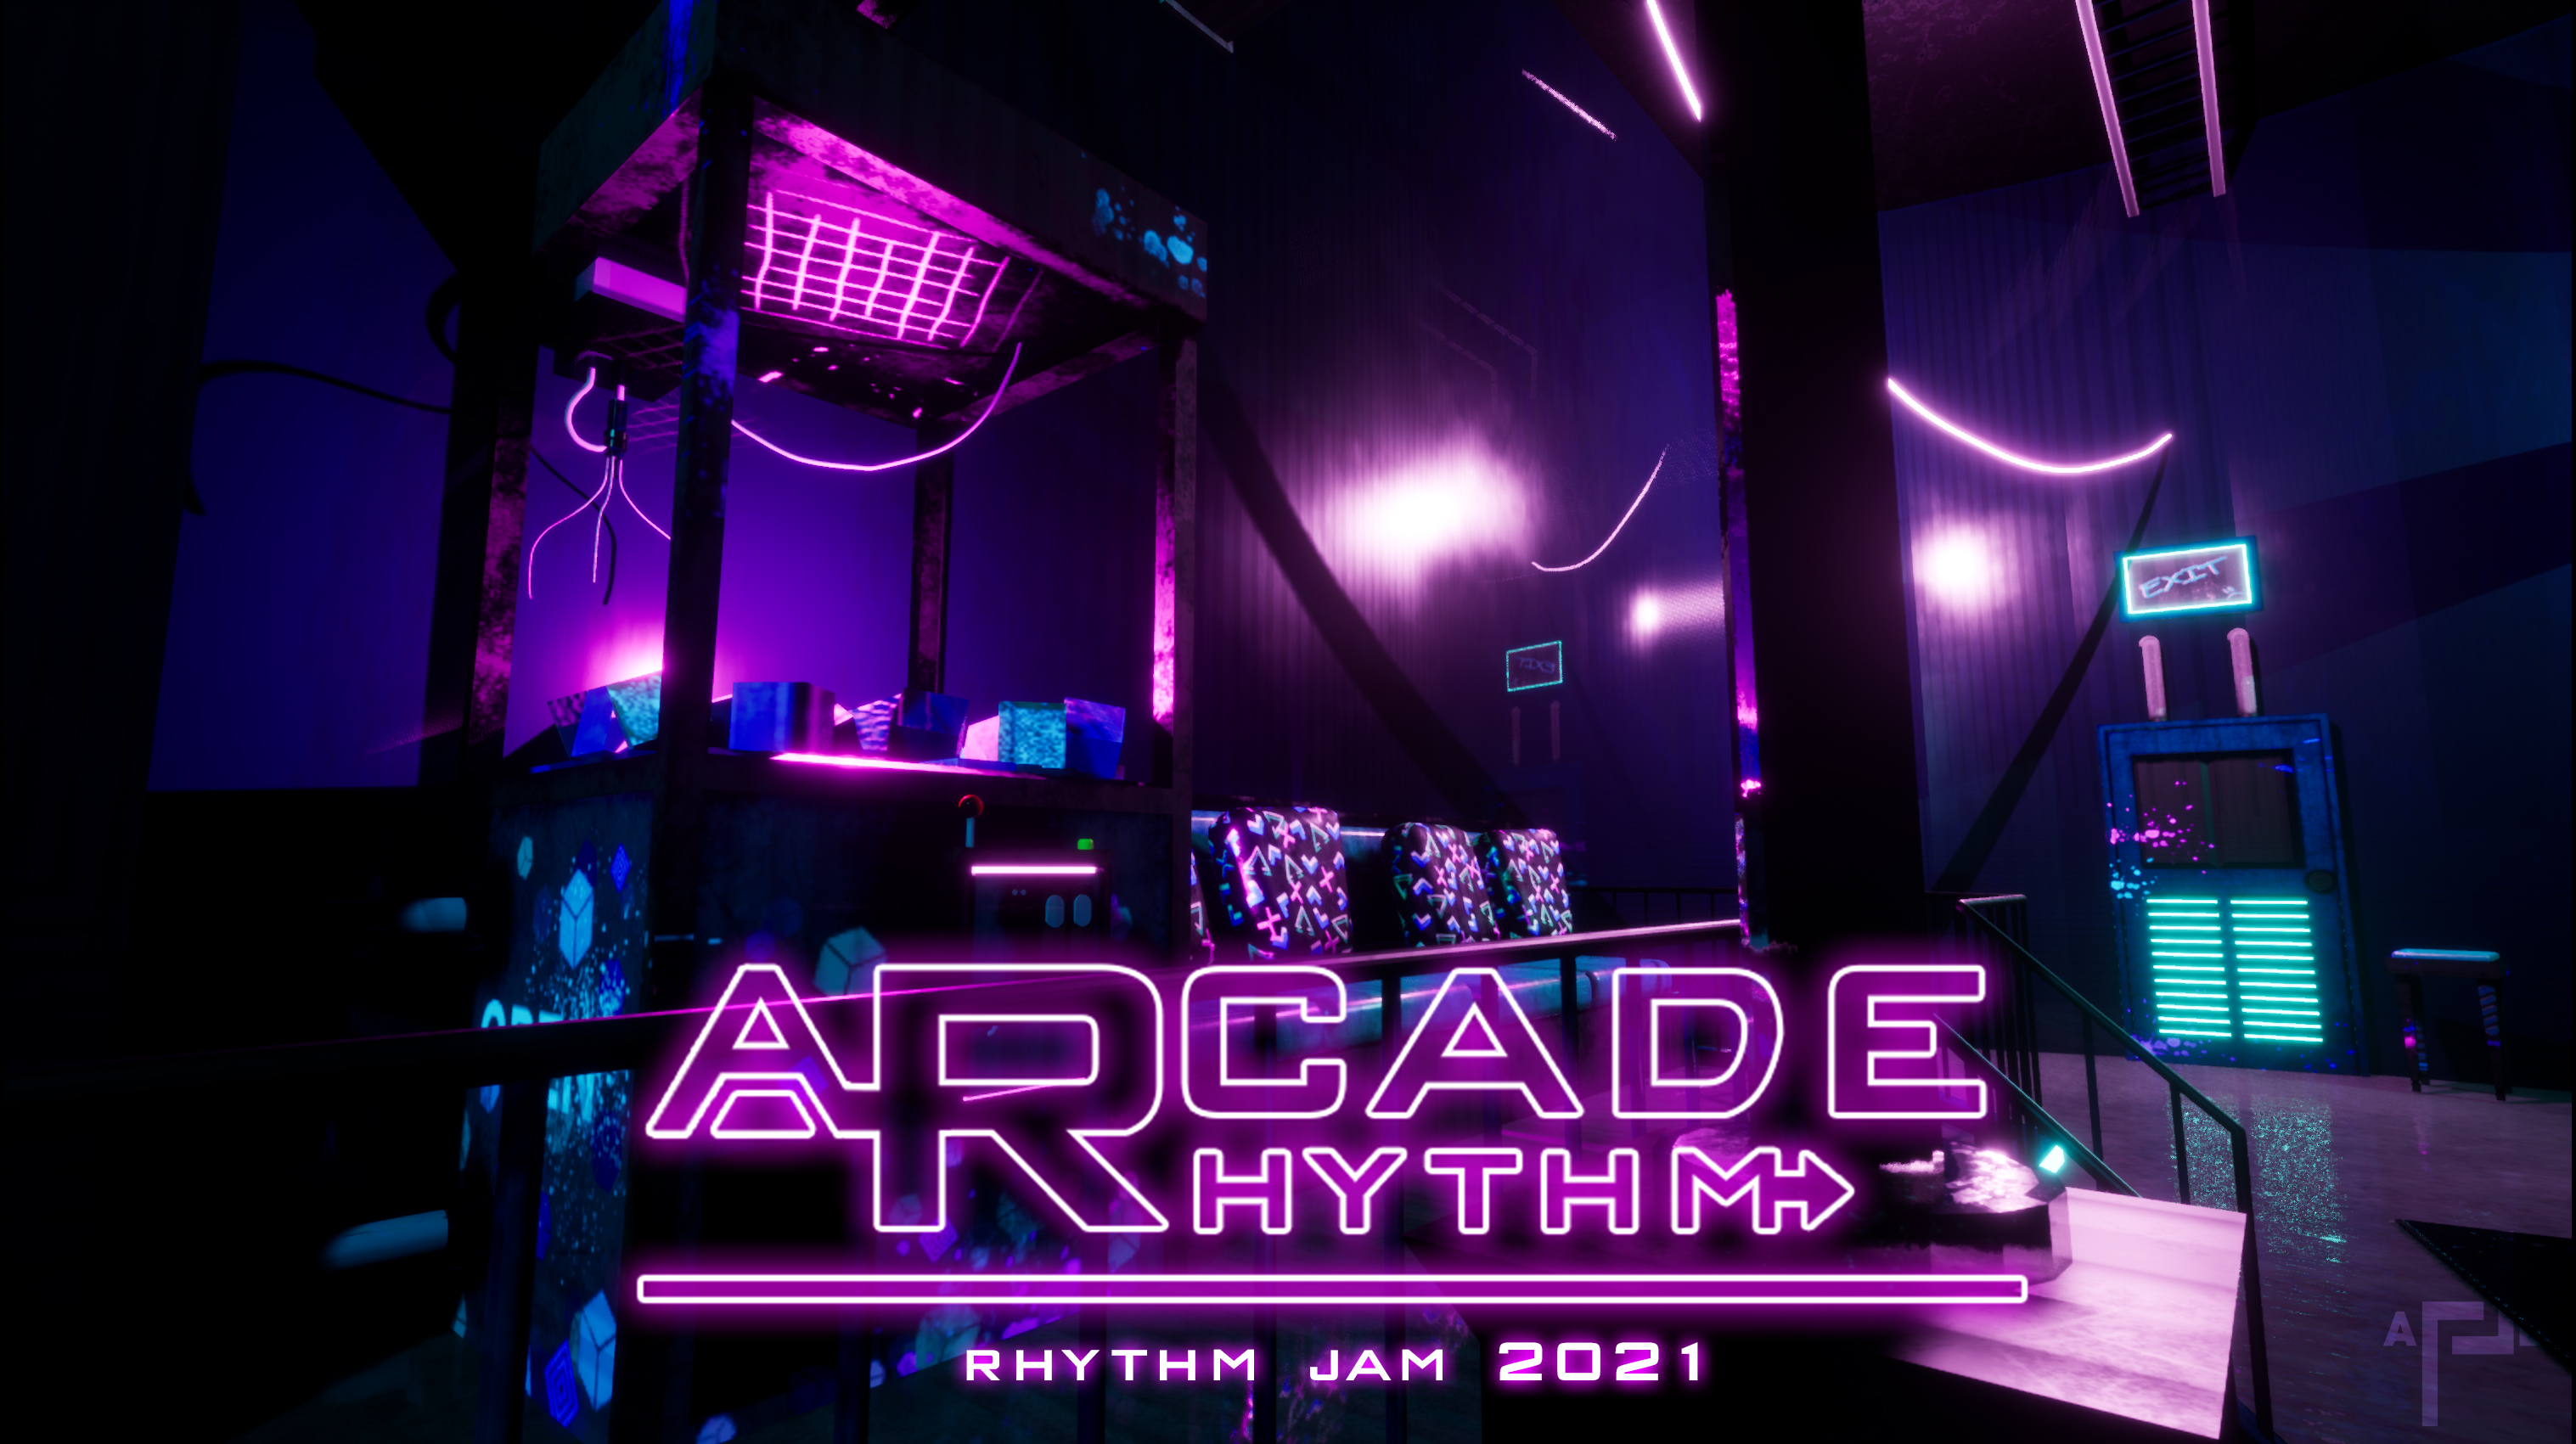 Arcade Rhythm - Jam 2021 by ALLDee